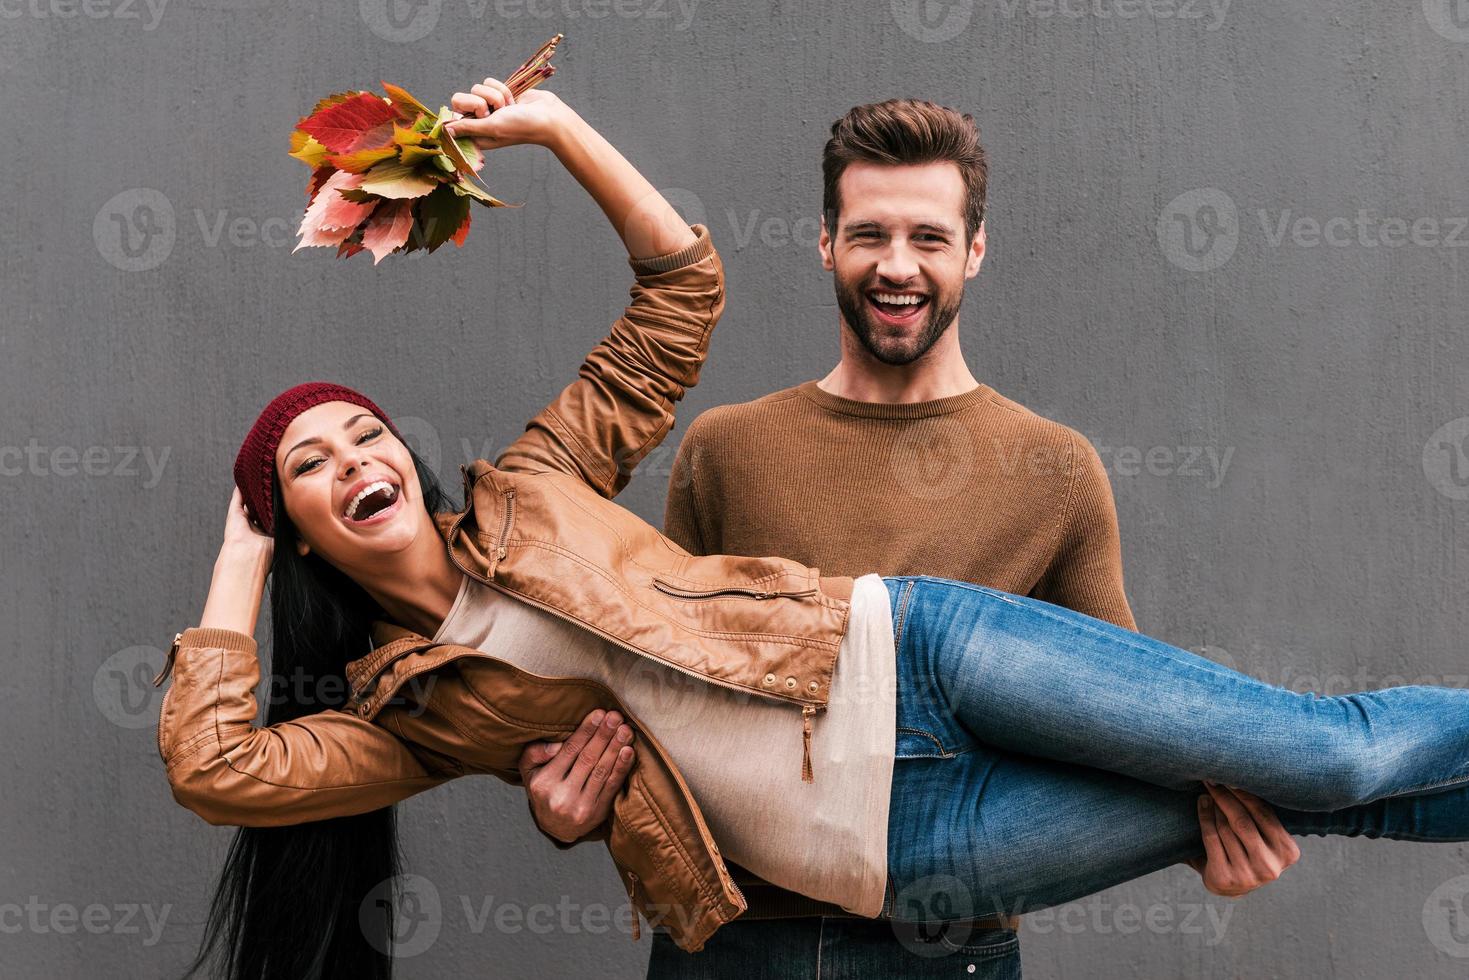 amor e diversão. lindo casal jovem se divertindo juntos em pé contra a parede cinza foto